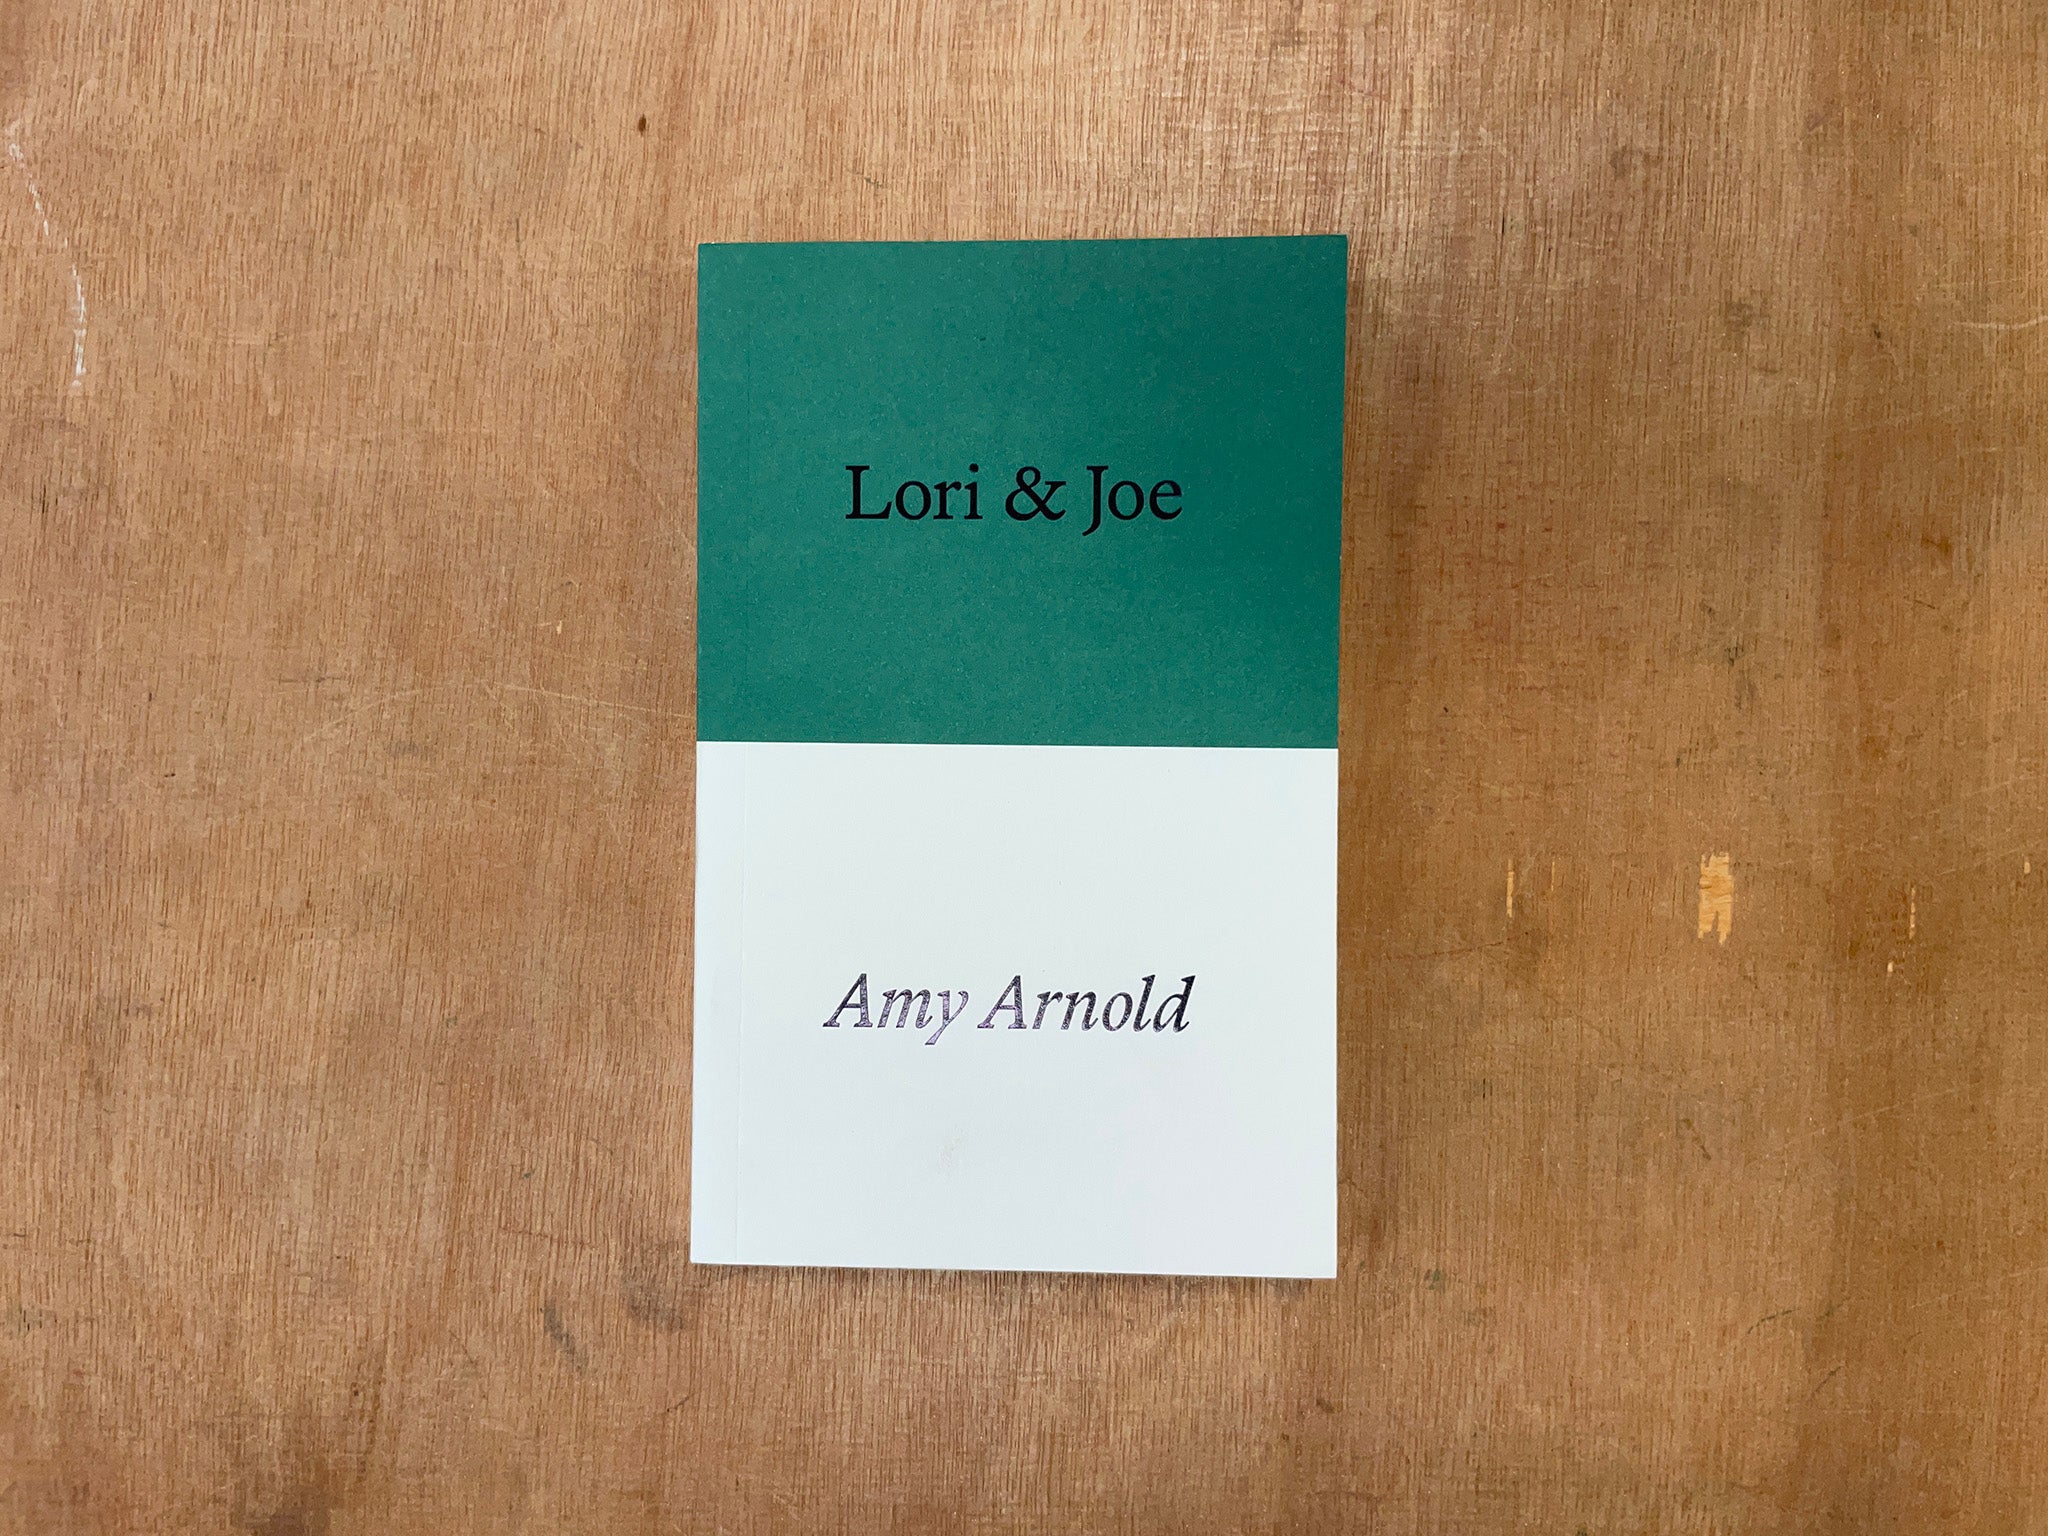 LORI & JOE by Amy Arnold